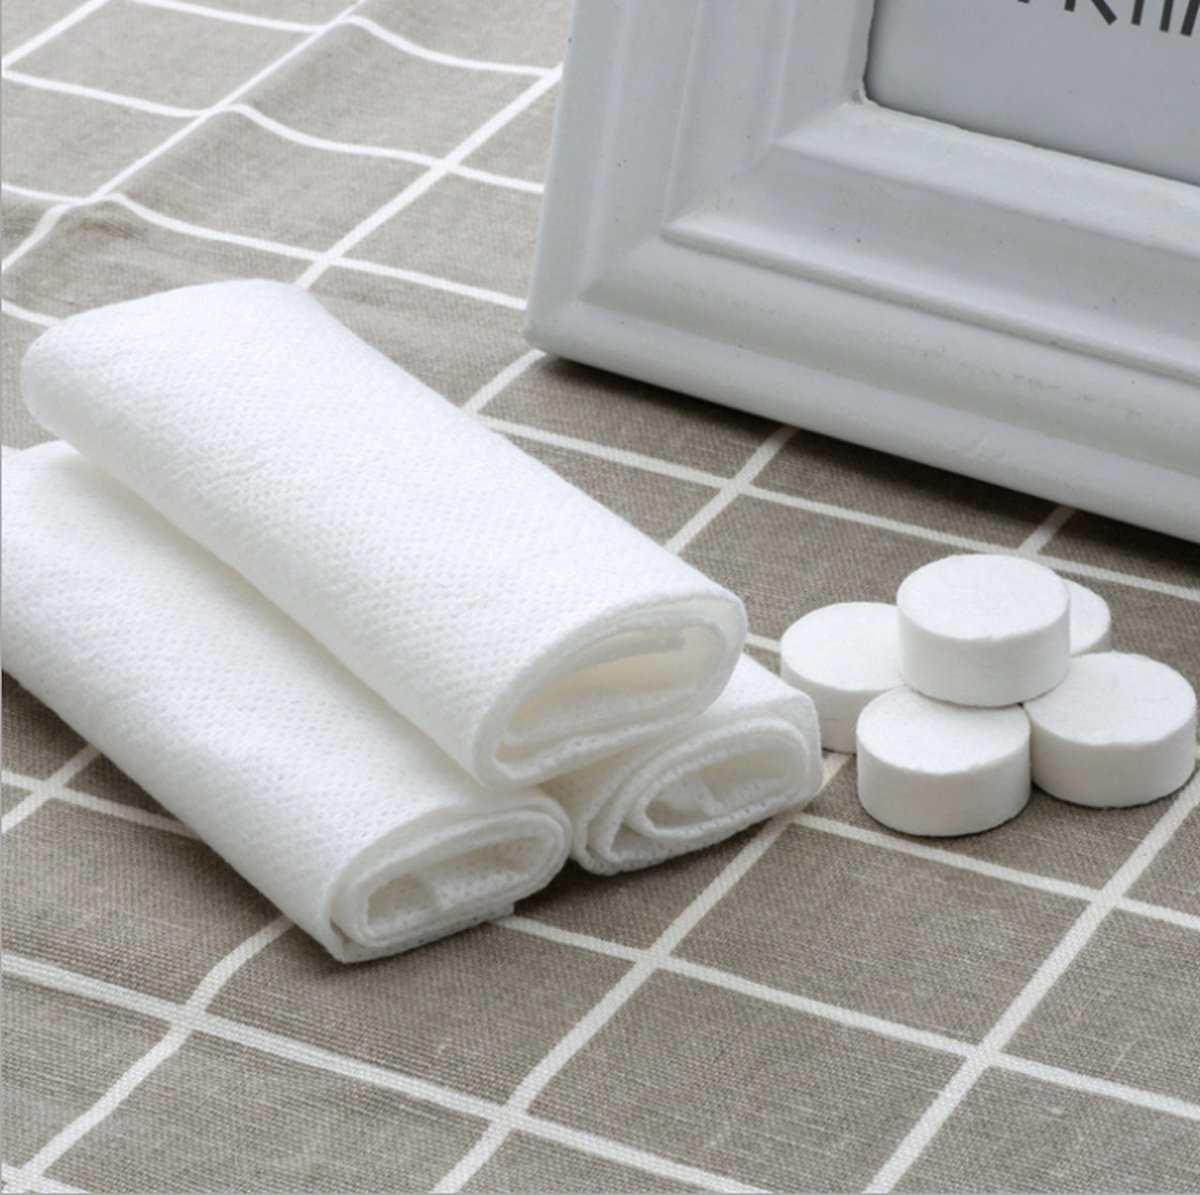 IBBO Shop - 200x Magic Towels - Per stuk verpakt in 1 zakje - 100% Biologisch afbreekbaar - Zonder parfum - 22 x 24 cm - Doekje - Handdoekje